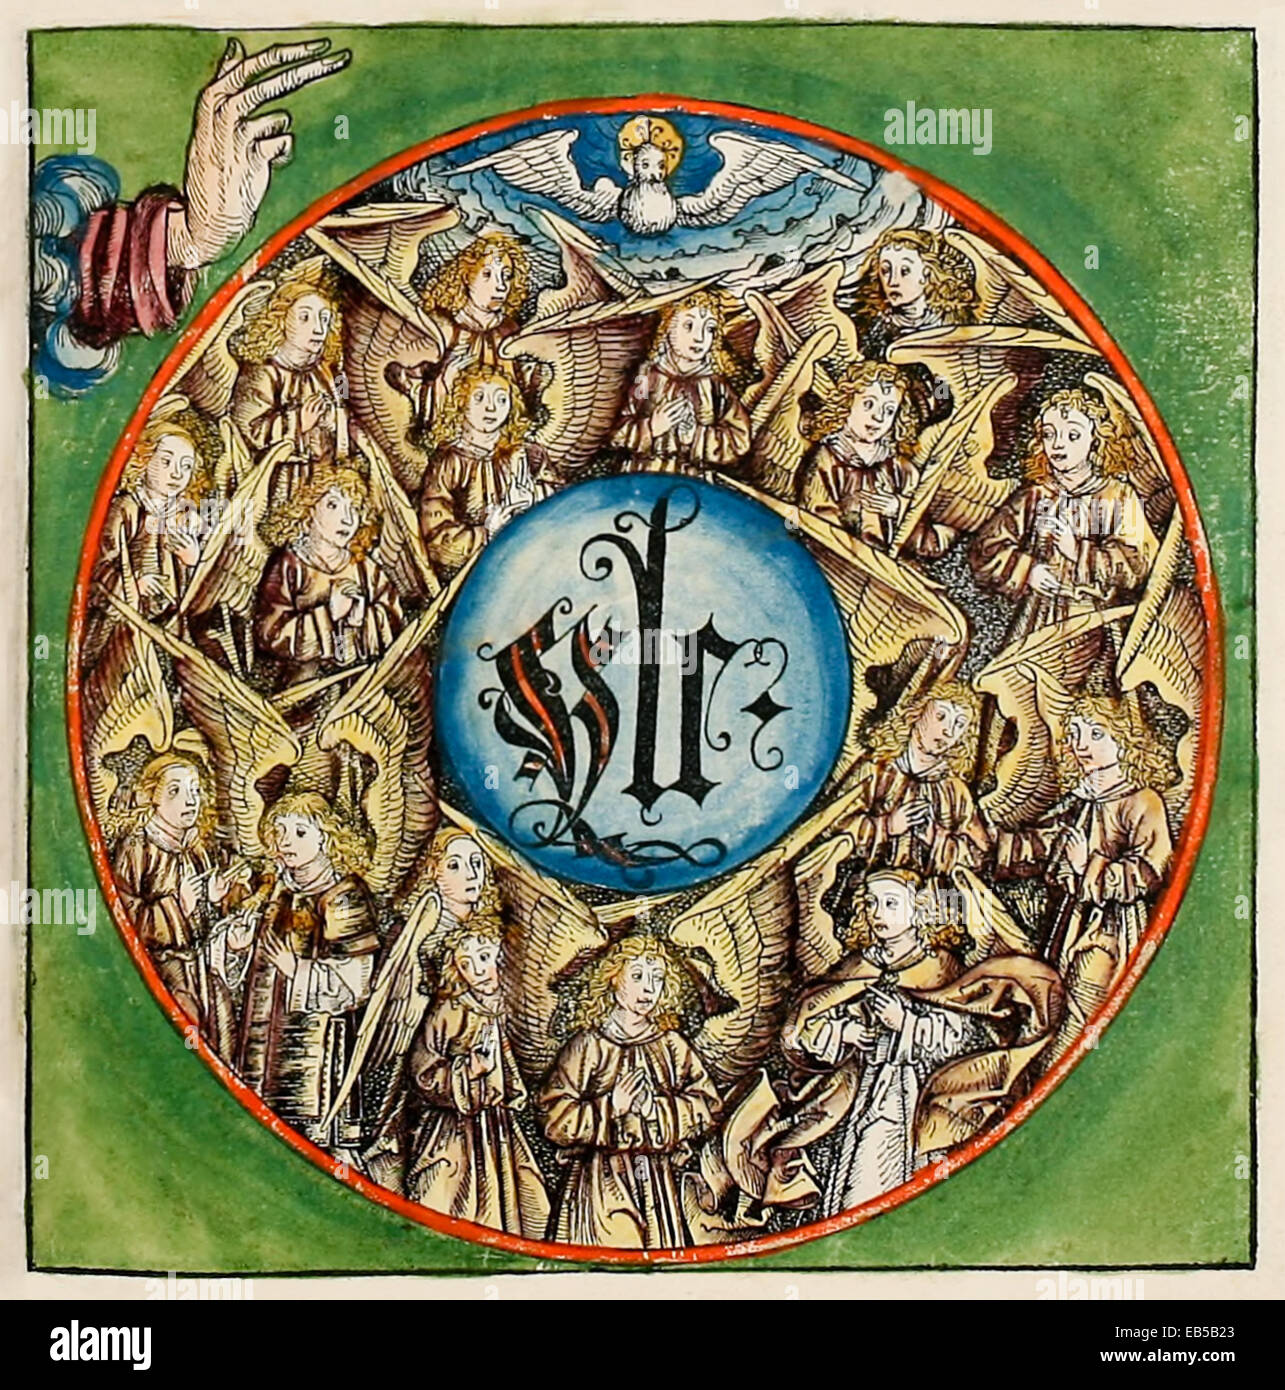 Der himmlische Chor, Gott, die Engel geschaffen. Von "Schedelsche Weltchronik" oder "Liber Chronicarum" von Hartmann Schedel (1440-1514). Siehe Beschreibung für mehr Informationen. Stockfoto